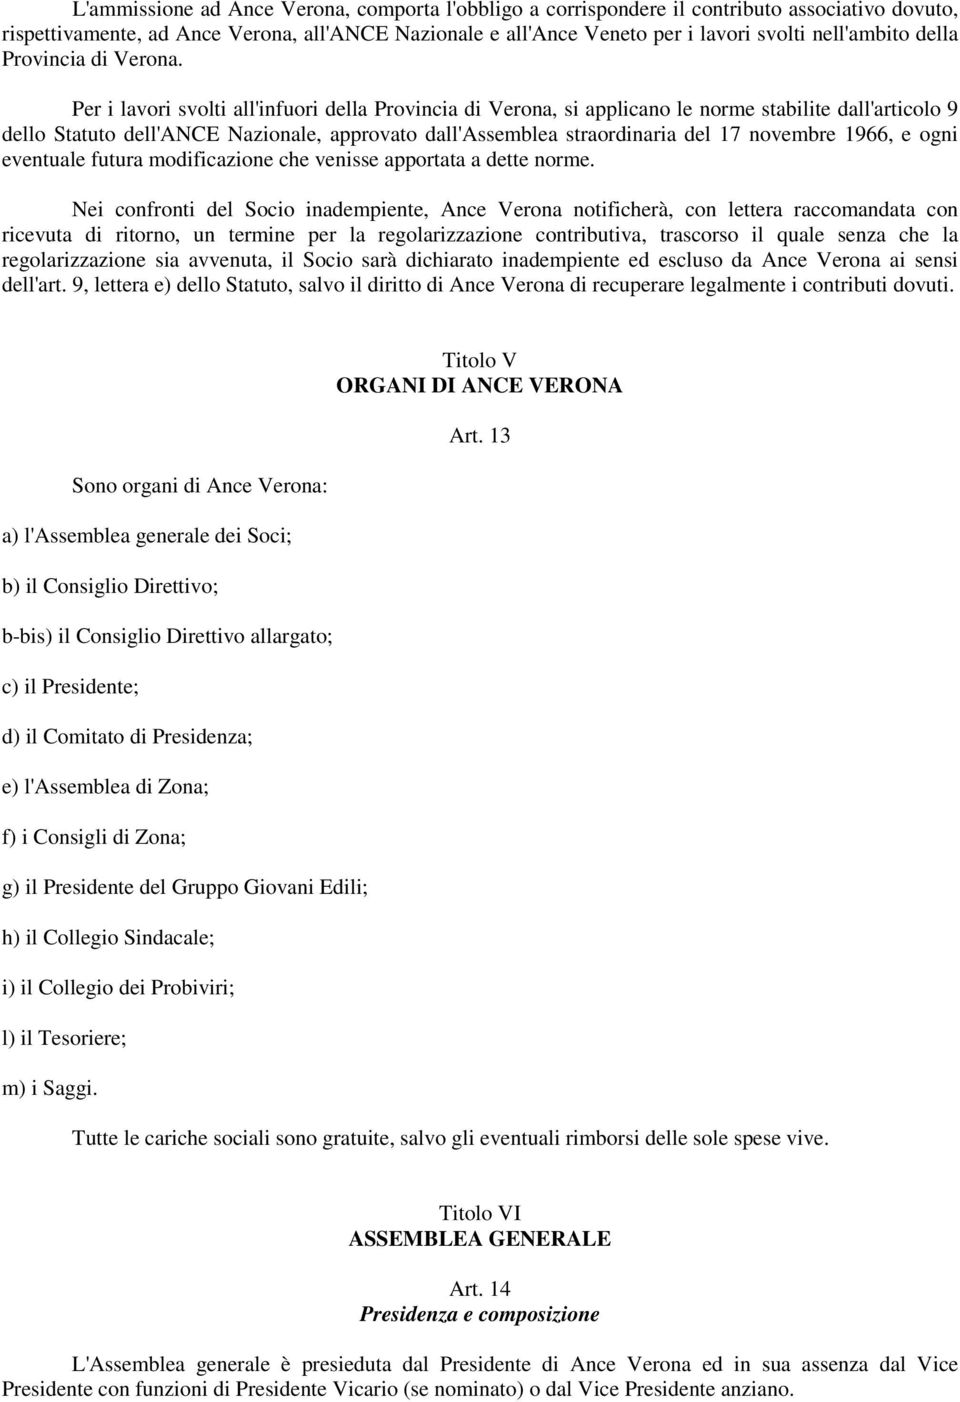 Per i lavori svolti all'infuori della Provincia di Verona, si applicano le norme stabilite dall'articolo 9 dello Statuto dell'ance Nazionale, approvato dall'assemblea straordinaria del 17 novembre